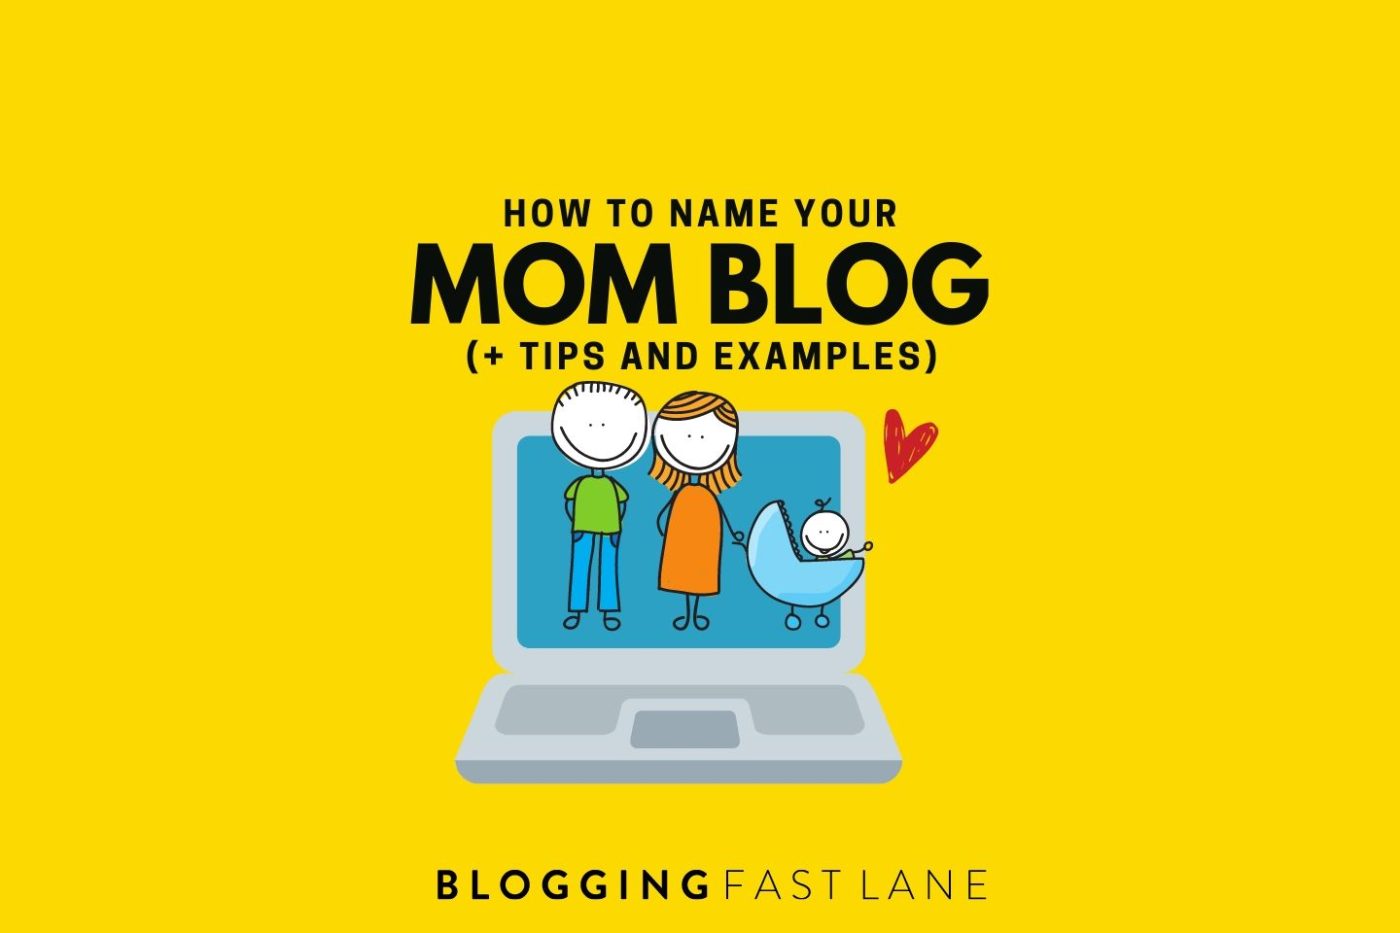 mom blog name ideas